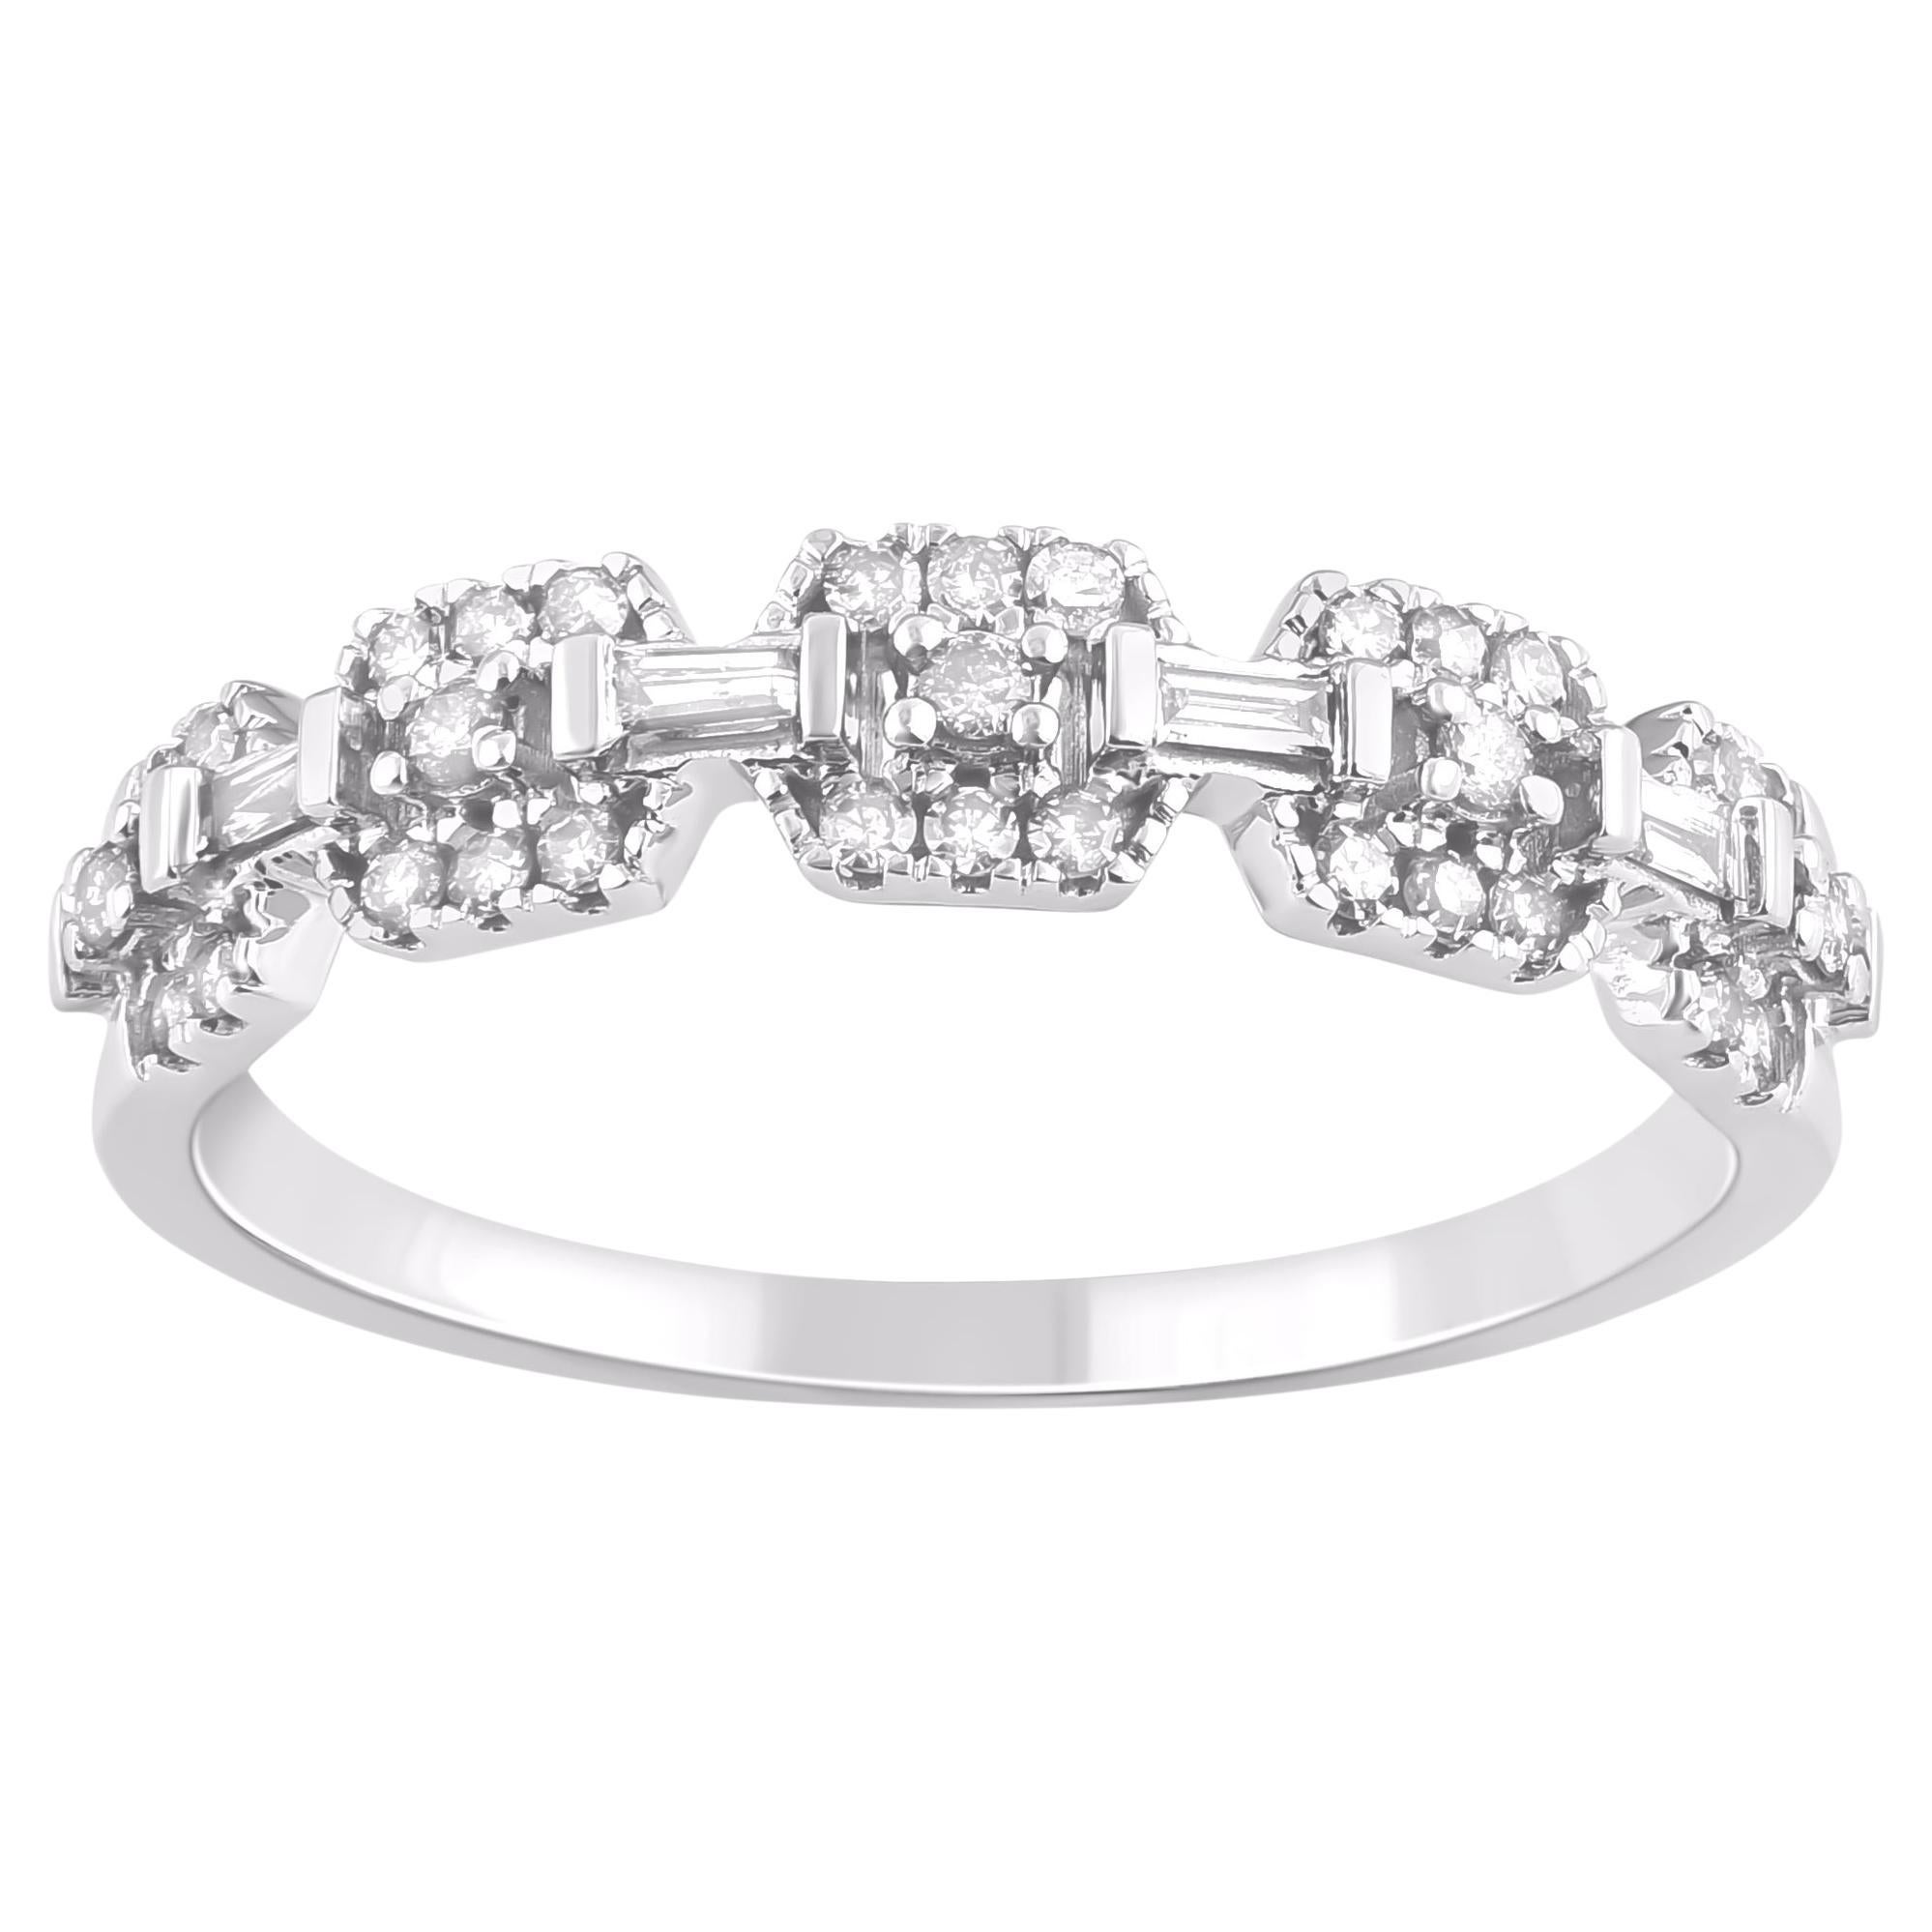 TJD 0.22 Carat Round & Baguette Diamond 14 Karat White Gold Wedding Band Ring